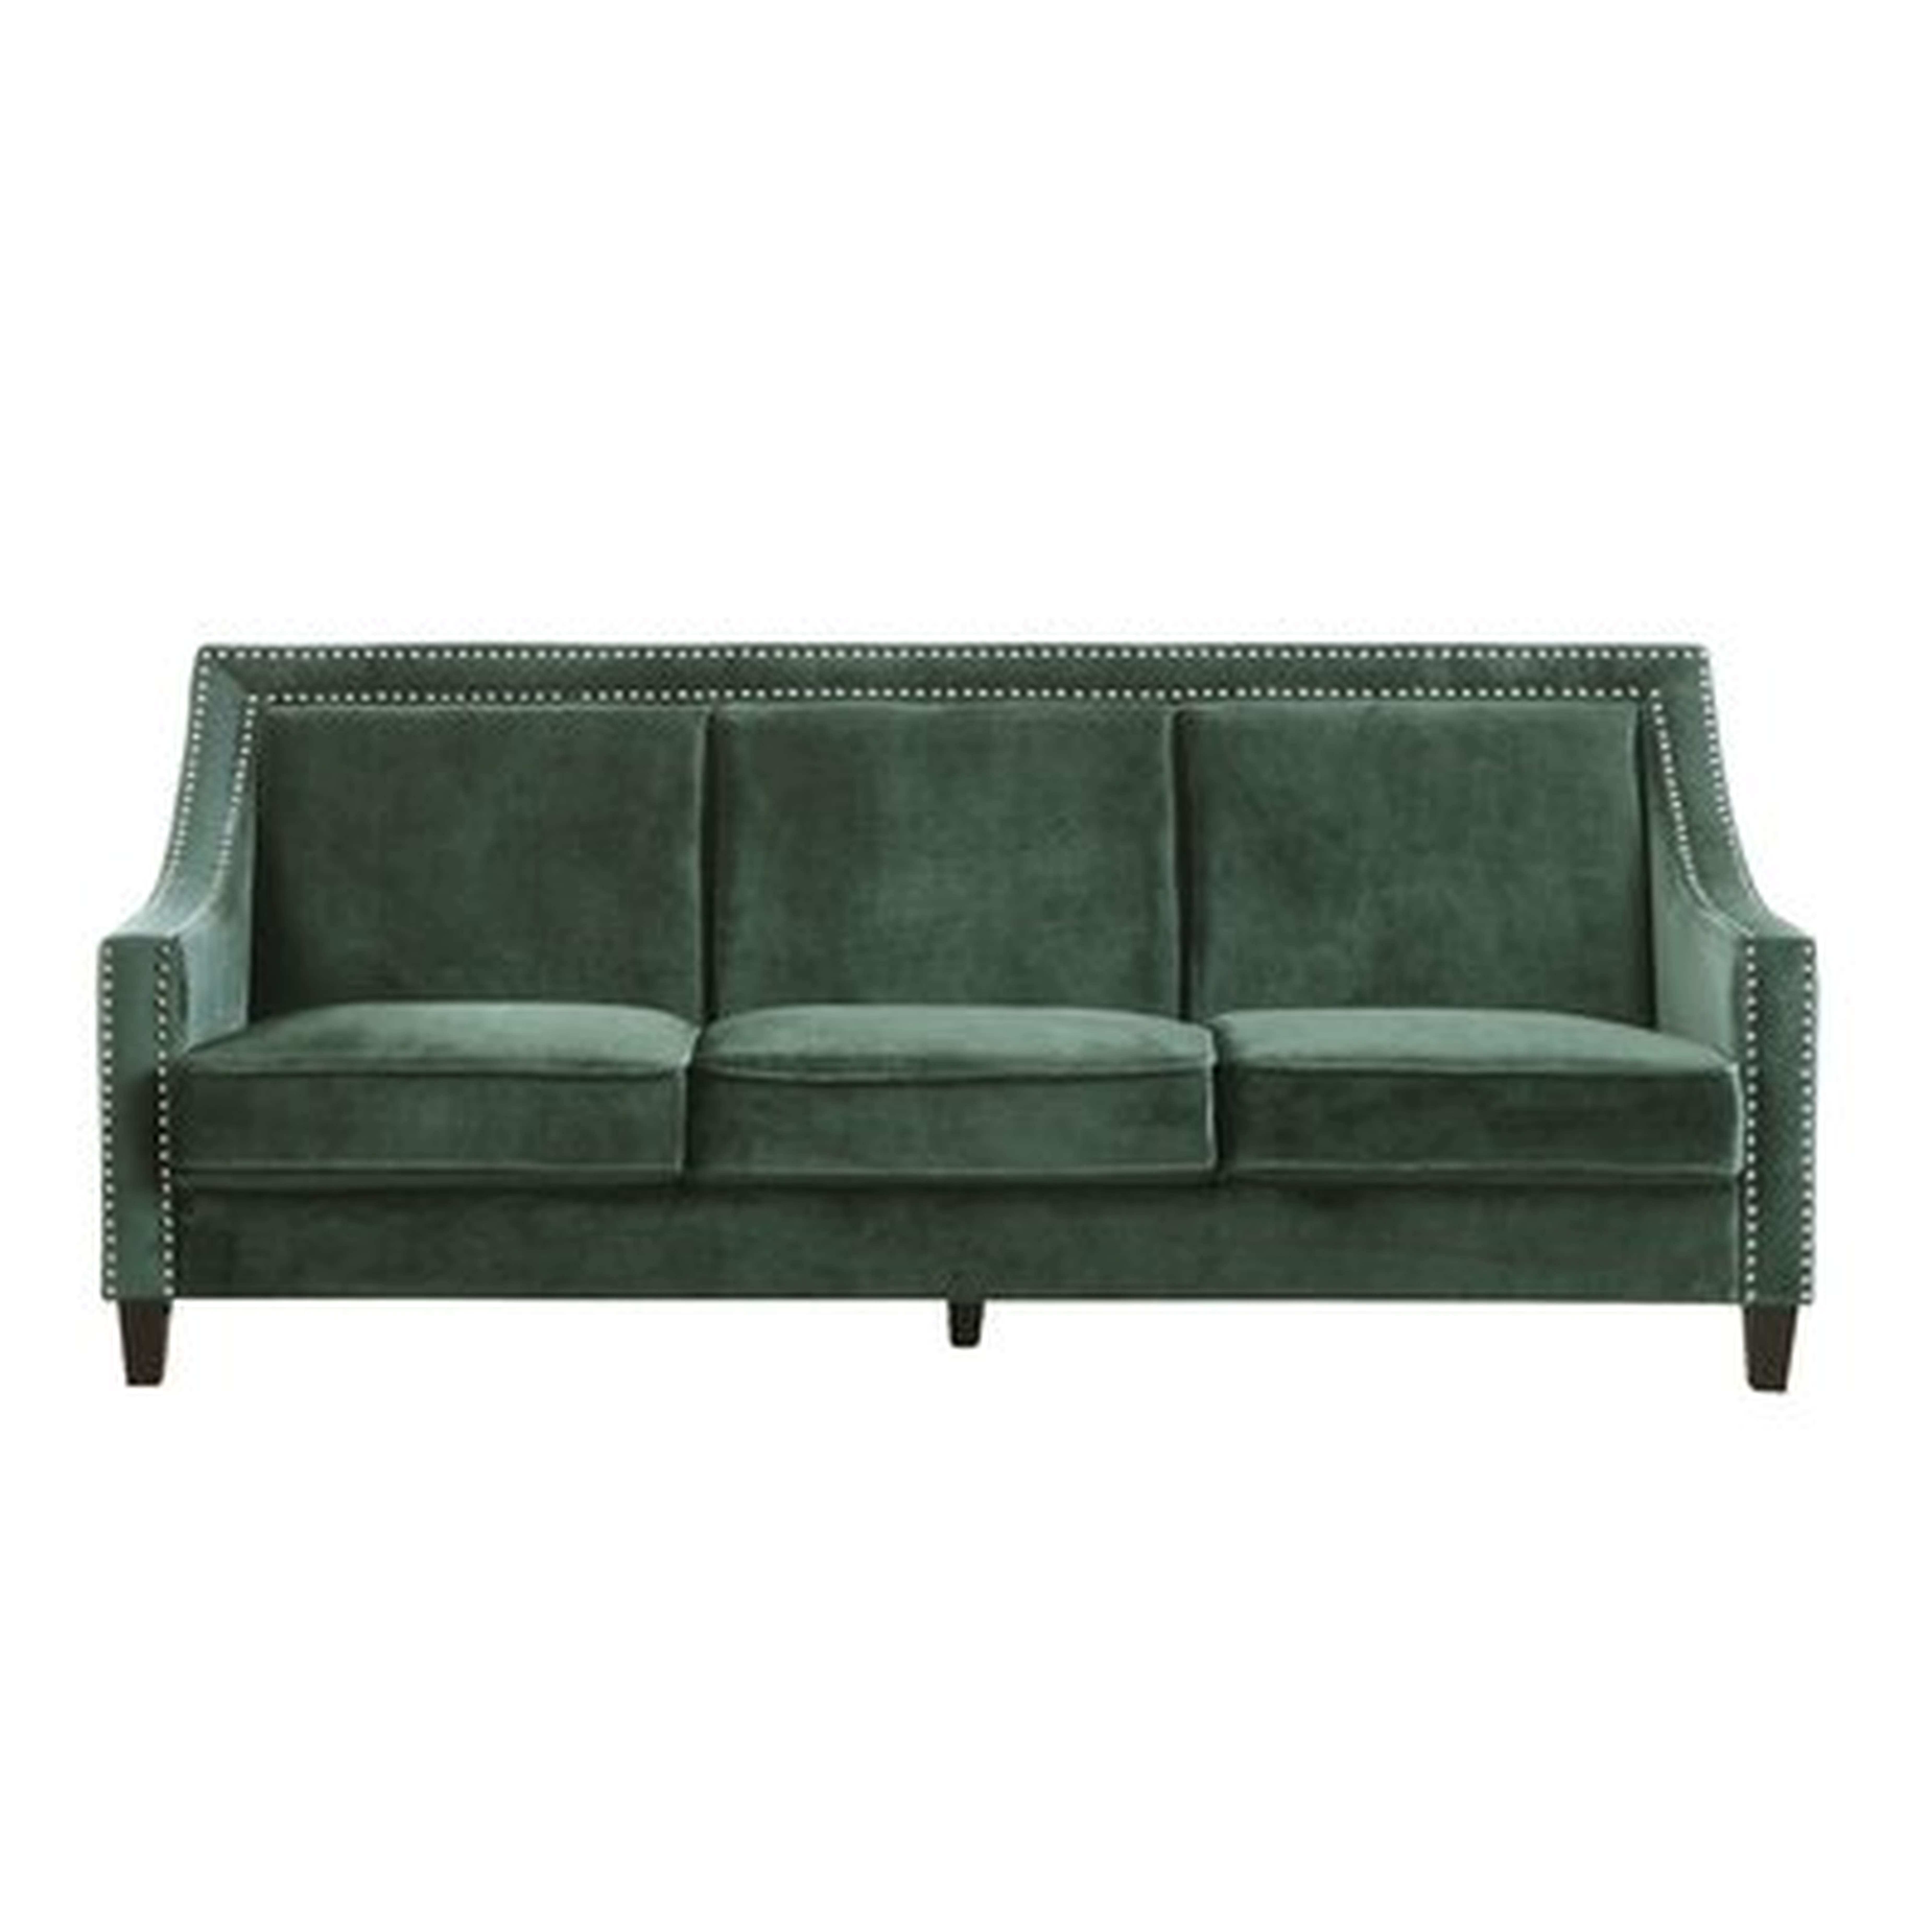 Trista Nailhead Trim Wood Legs Couch Sofa - Wayfair